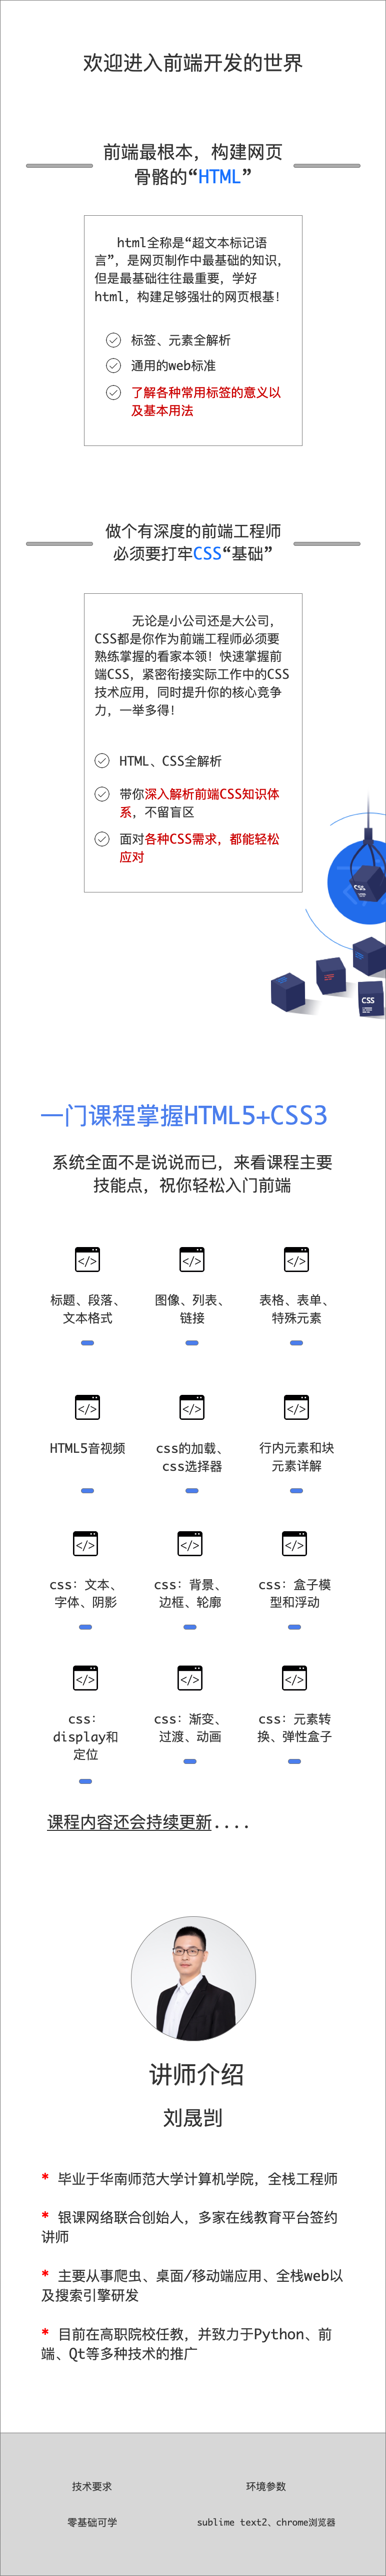 刘老师带你学HTML5+CSS3.png